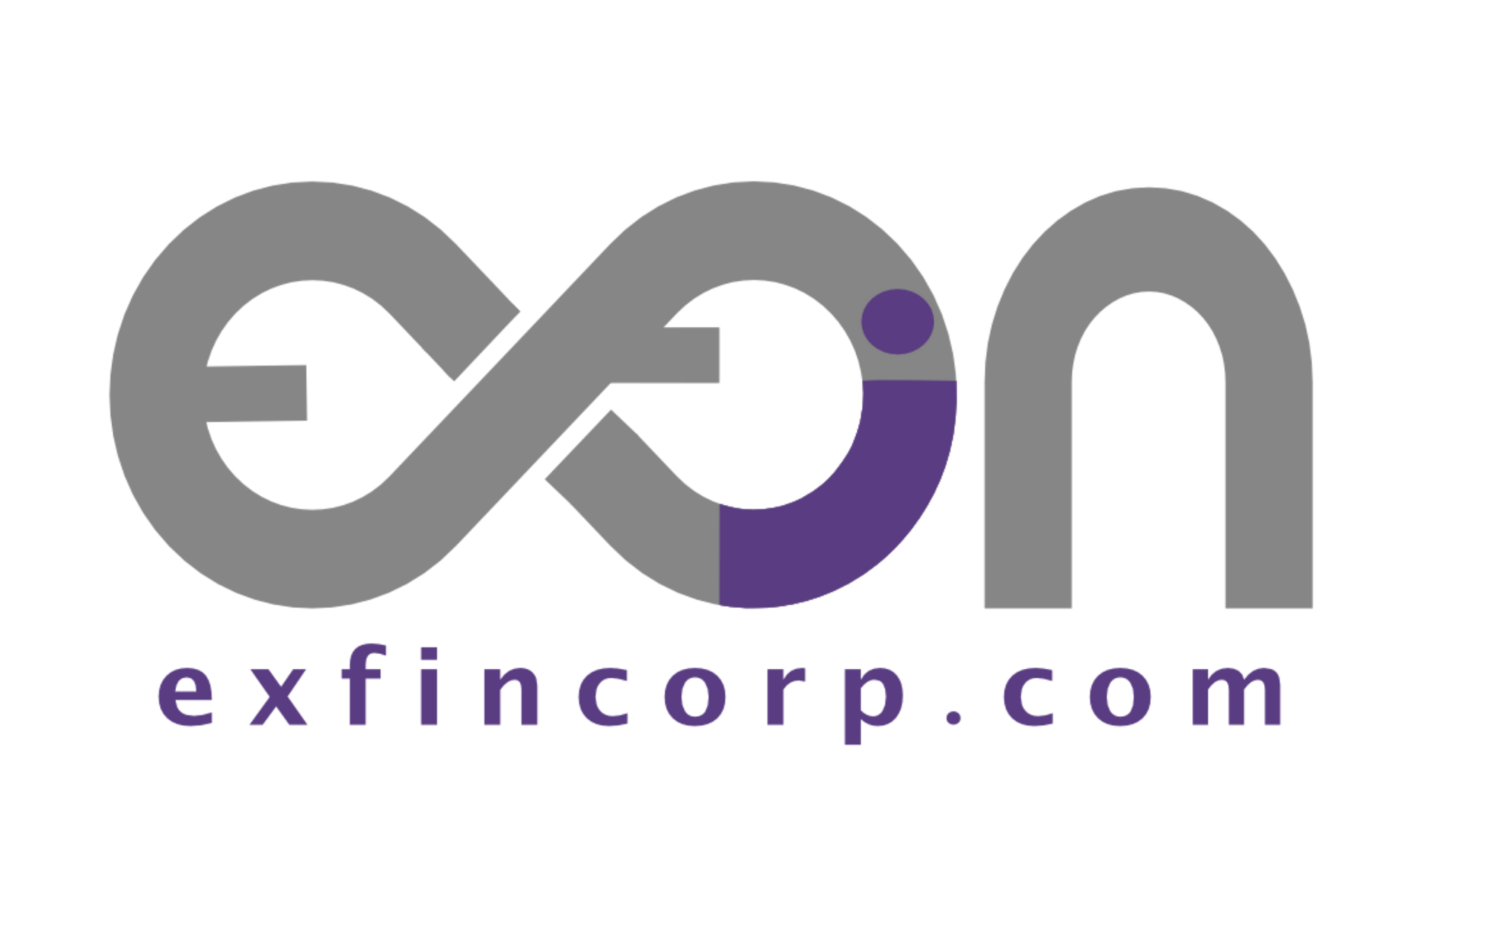 Exfin Corp